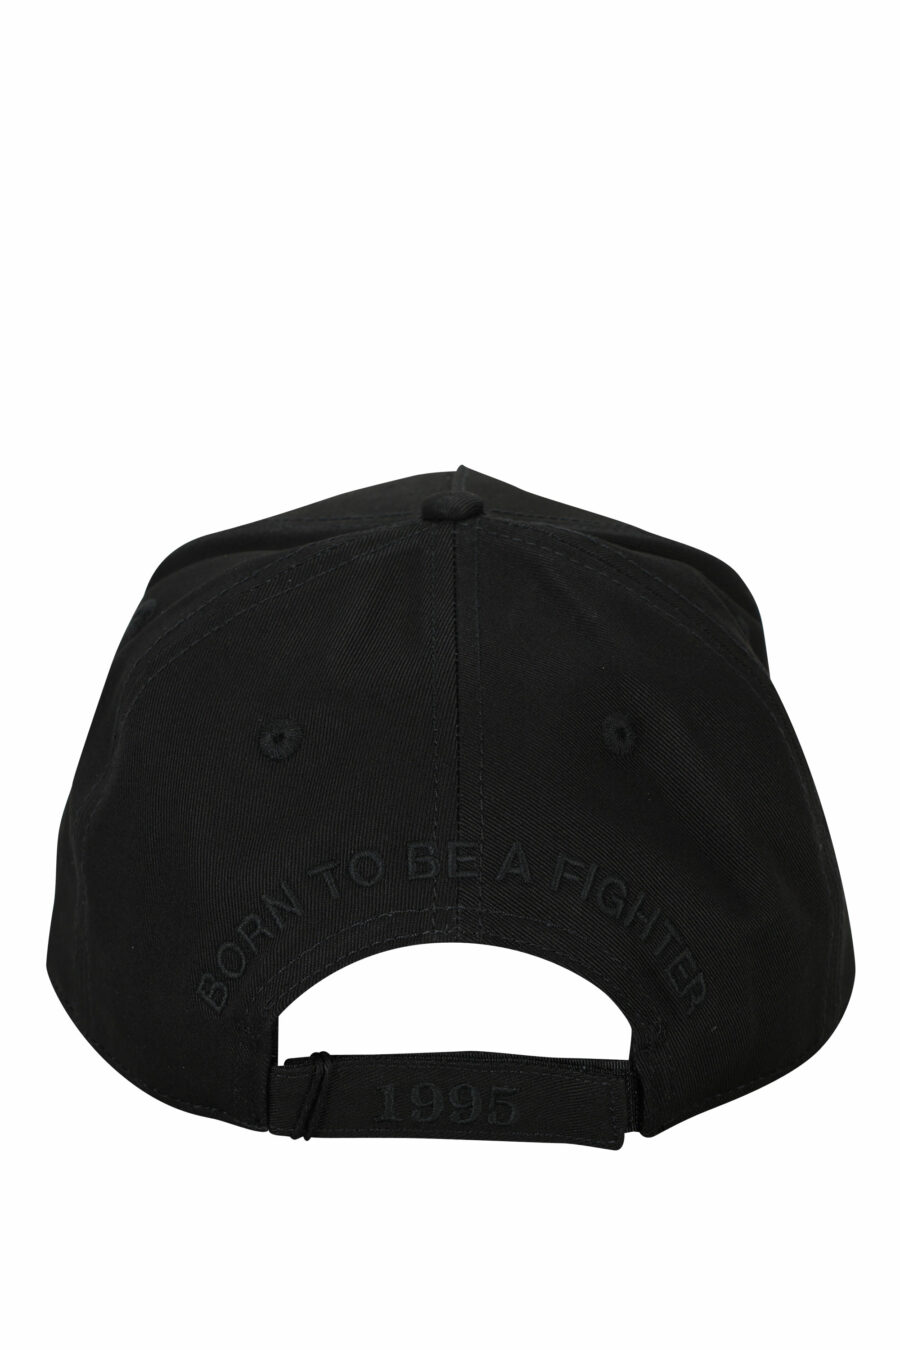 Gorra negra con logo en recuadro monocromático - 8055777286487 1